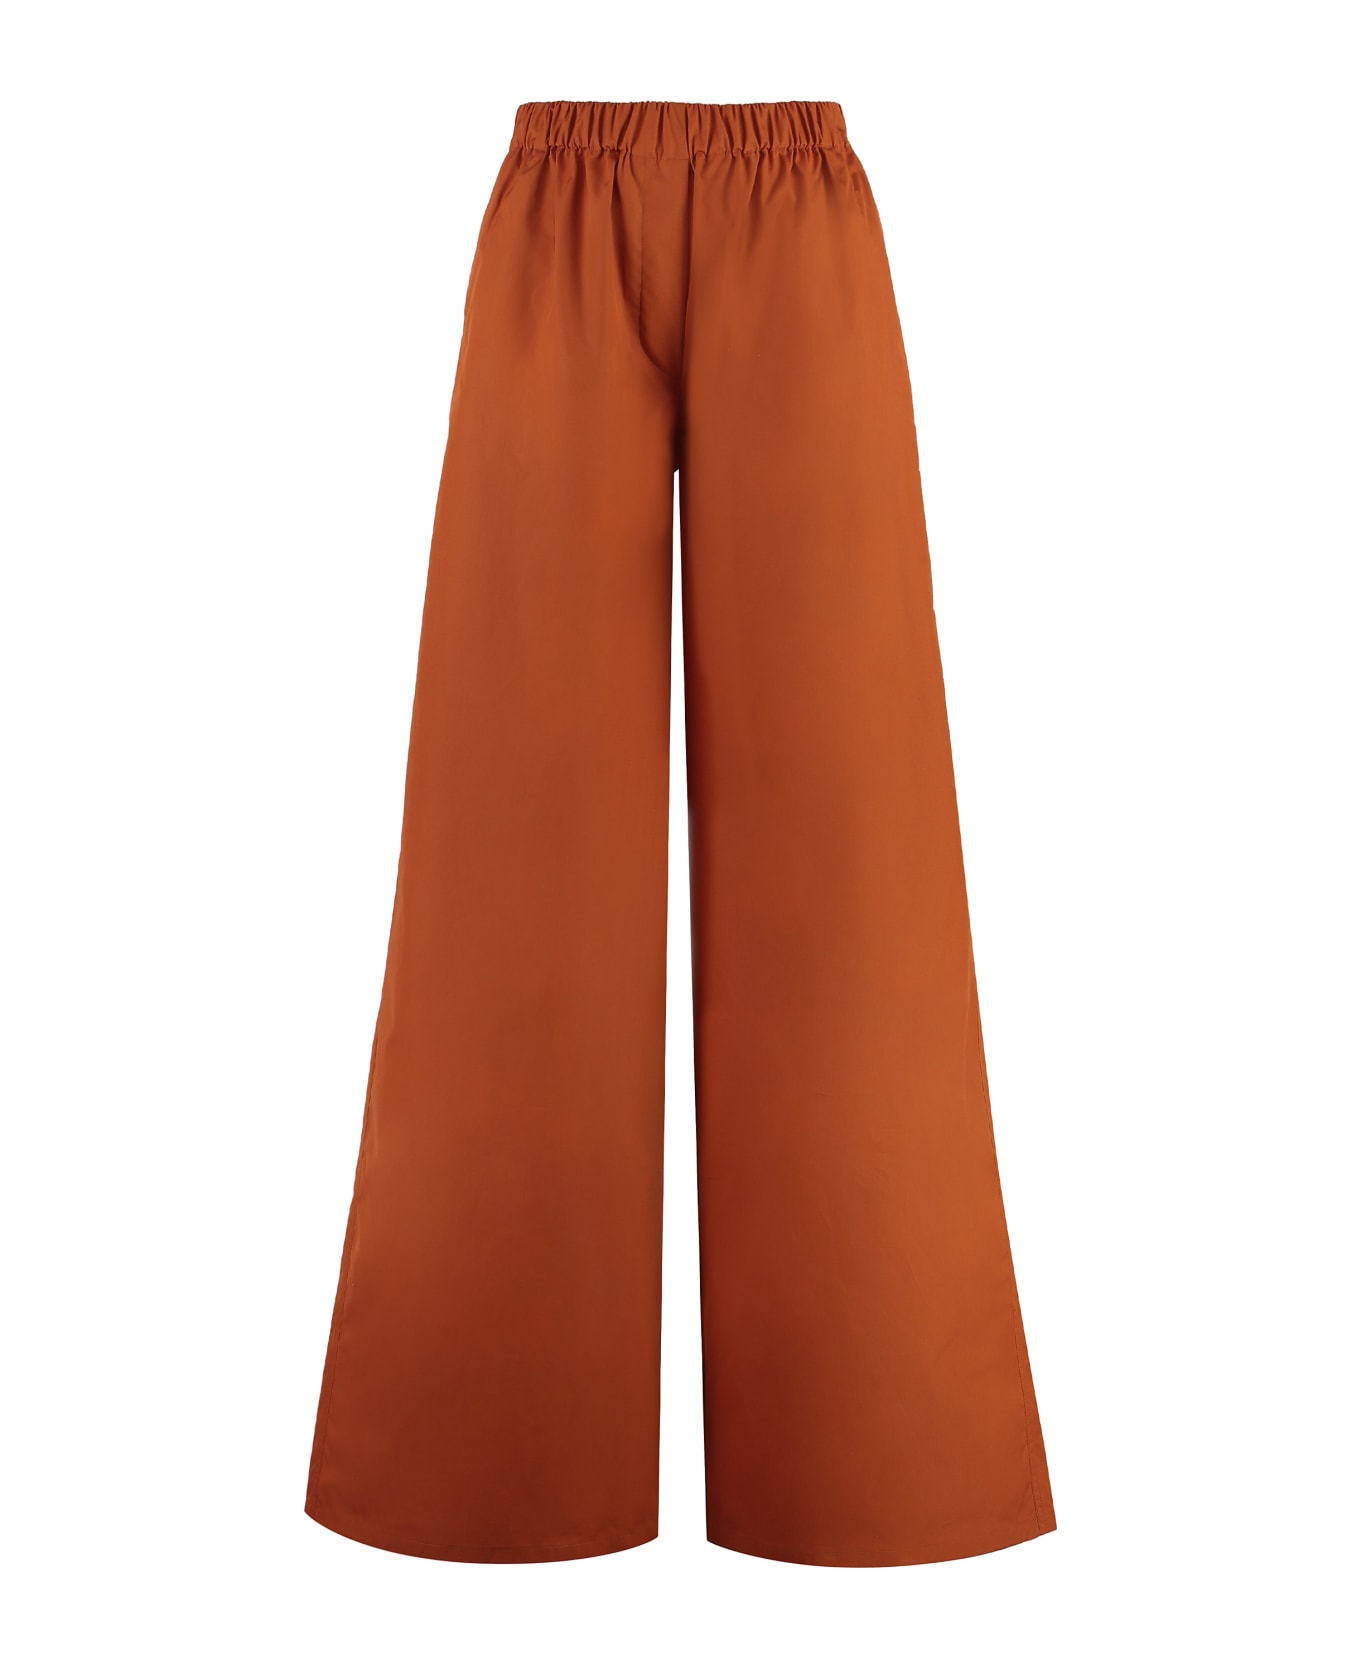 Max Mara Navigli Cotton Trousers - Orange ボトムス